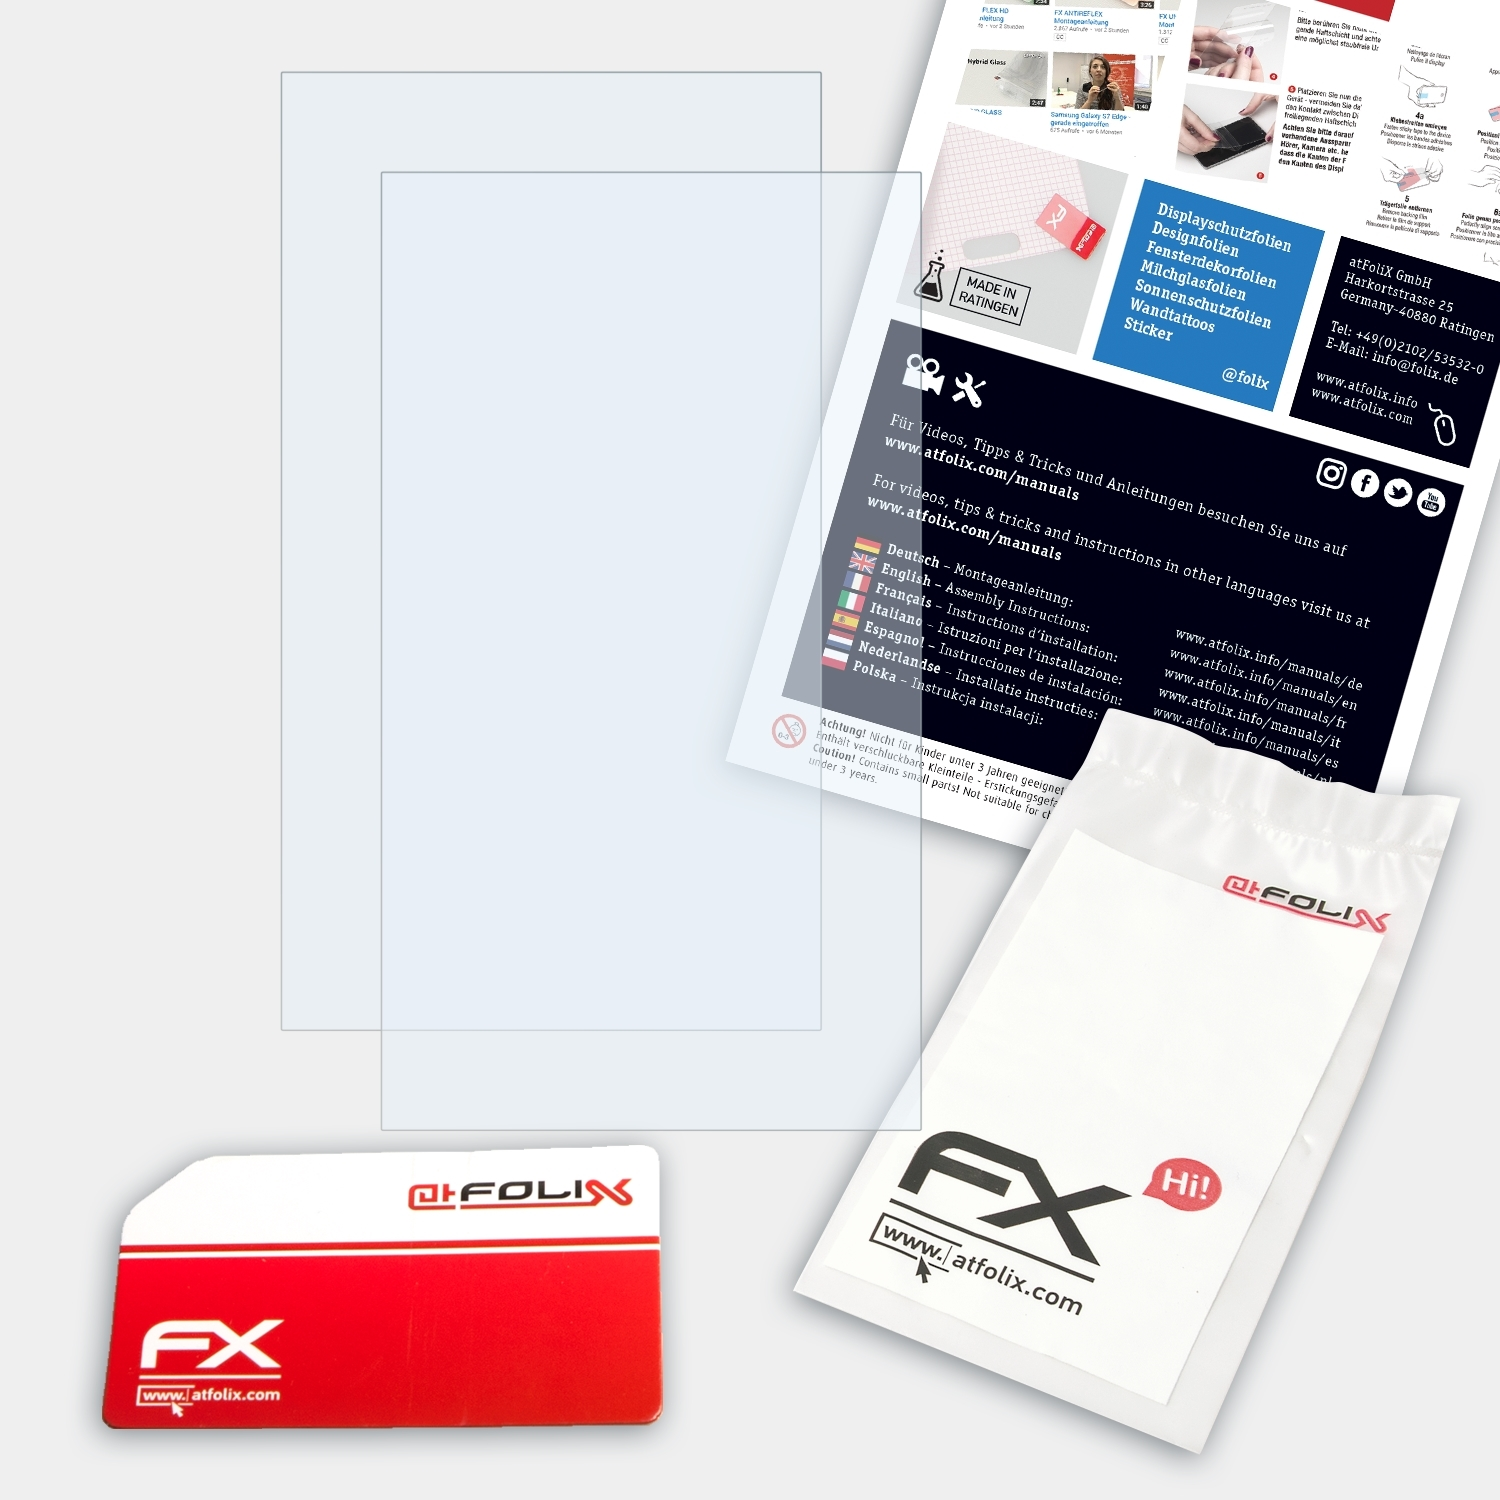 FX-Clear 2x Lenovo P53s) ATFOLIX Displayschutz(für ThinkPad